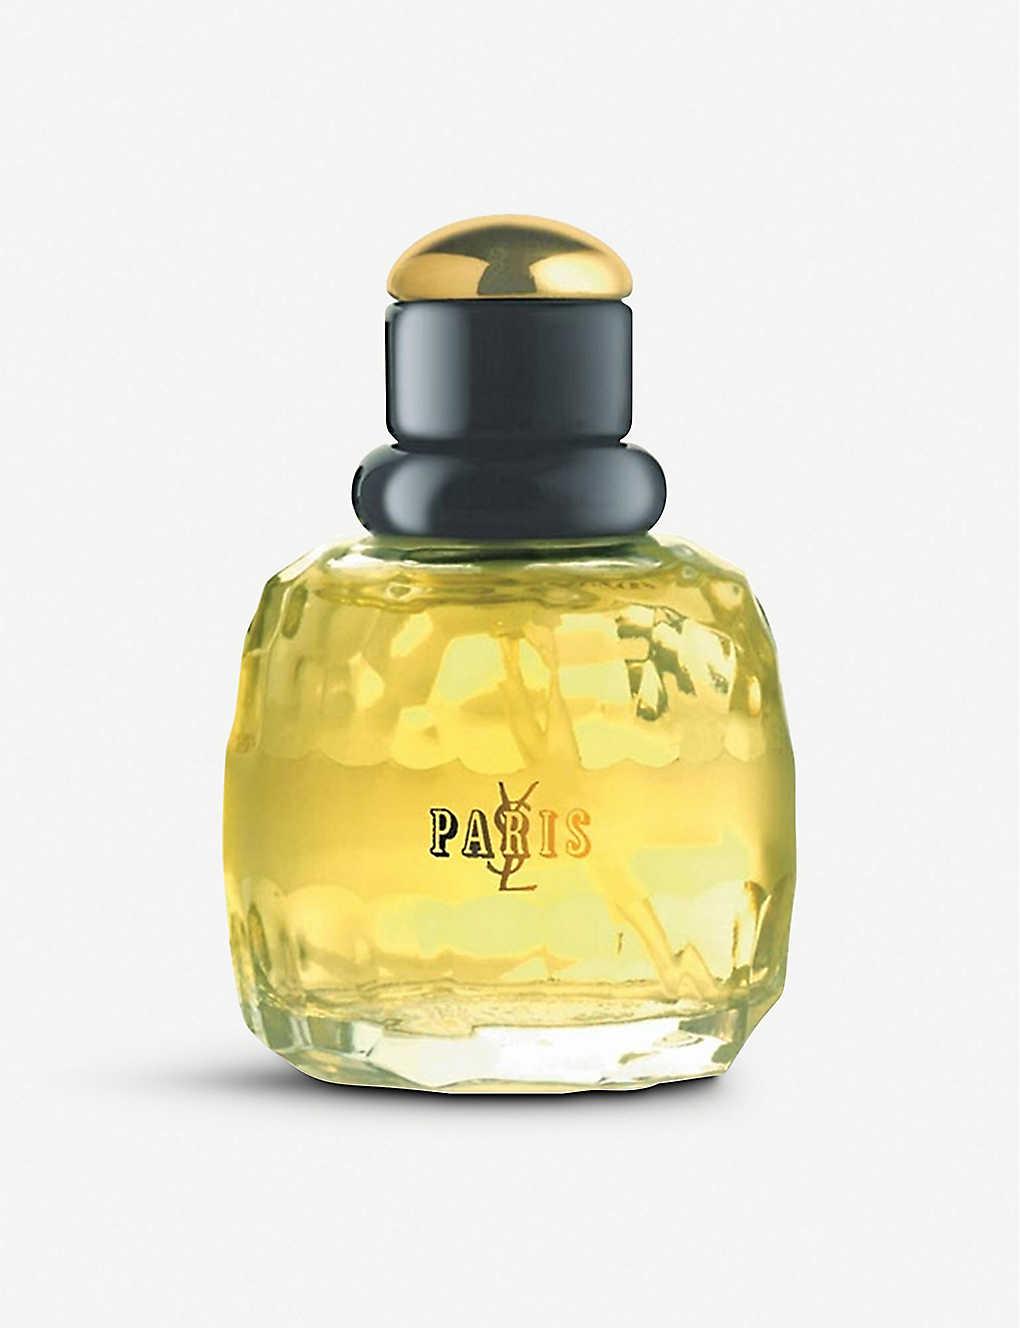 Yves Saint Laurent Paris Eau De Parfum 50ml